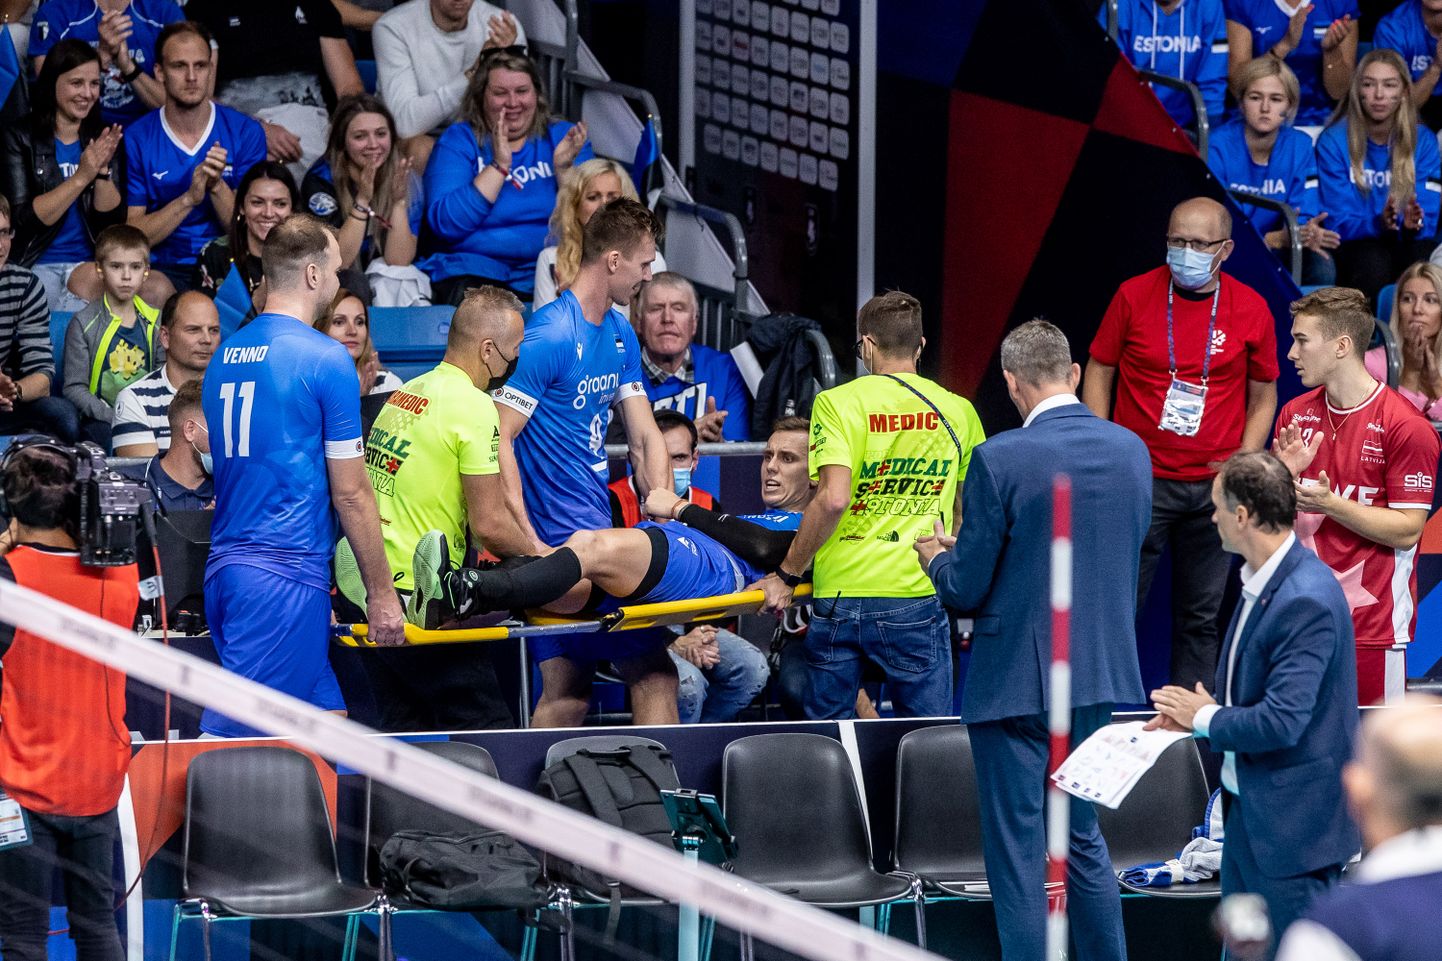 Foto 2021. aasta septembrist: Eesti võrkpallikoondislane Karli Allik sai EMil vigastada ning oli sunnitud vahele jätma kogu klubihooaja.